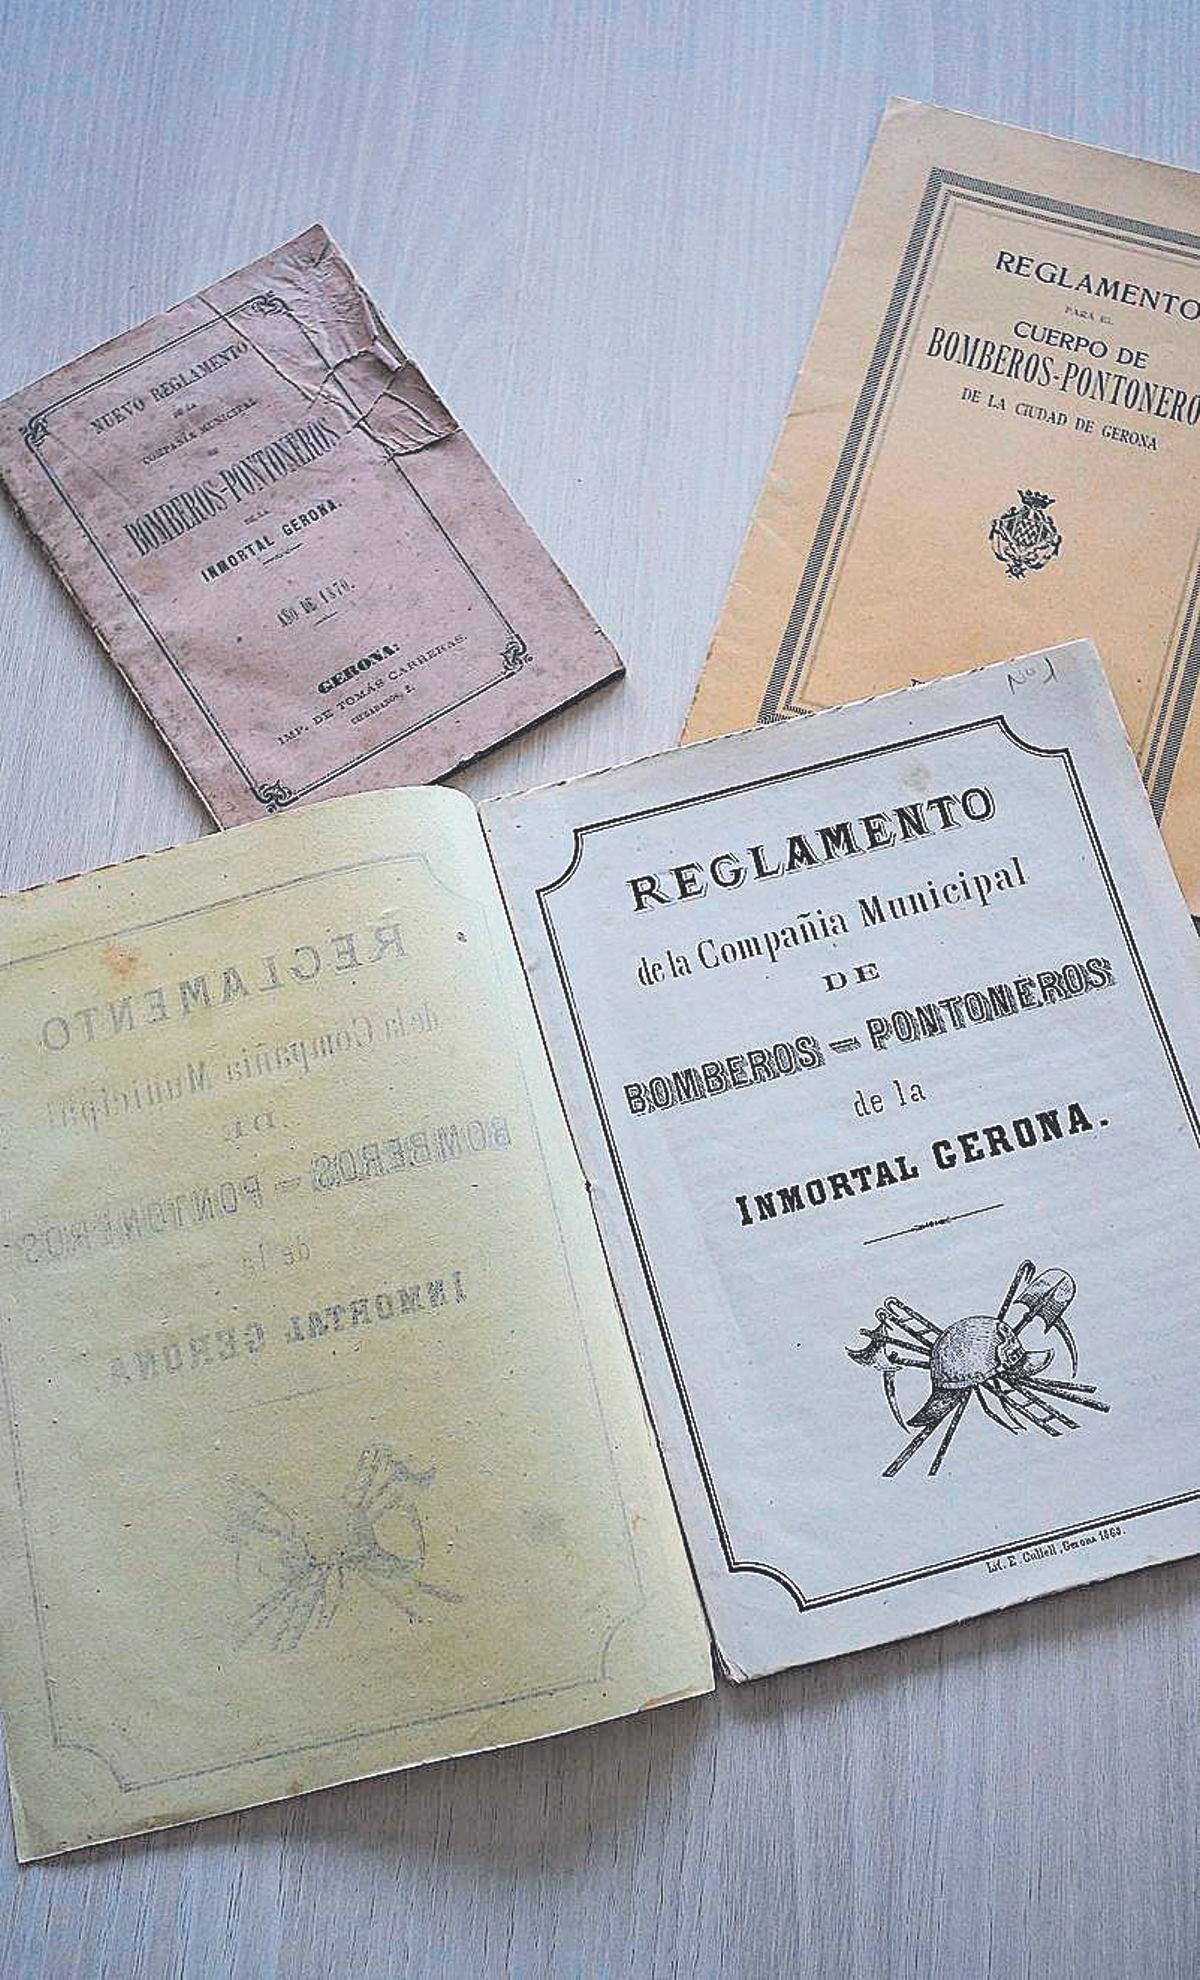 Els Reglaments dels bombers de Girona recopilats pels historiadors.